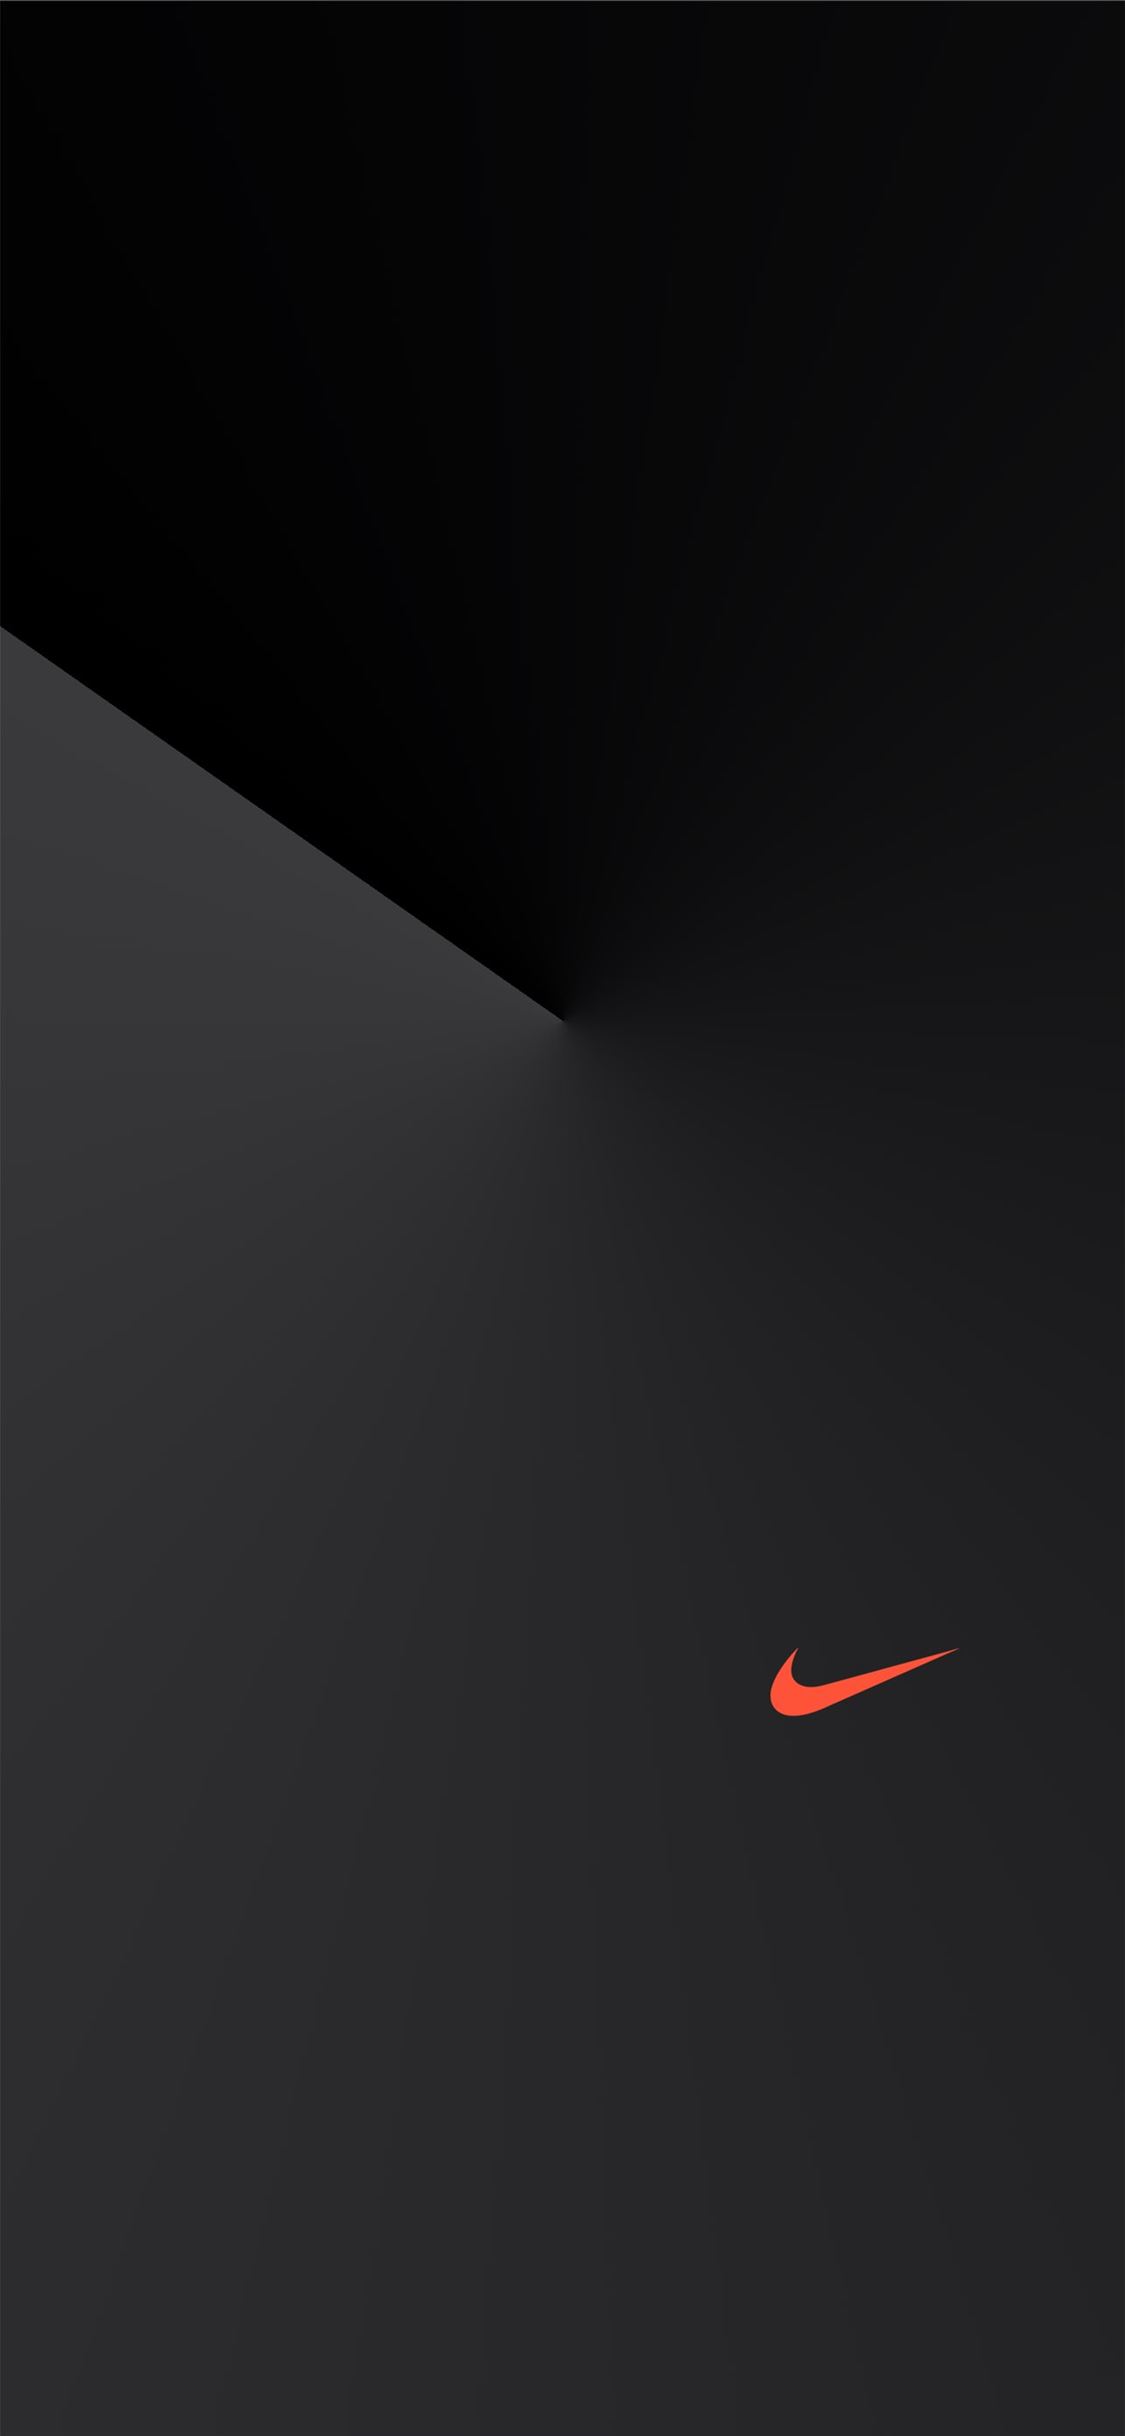 Tải ngay hình nền điện thoại Nike đen miễn phí để cập nhật phong cách thời trang của bạn. Với mẫu thiết kế trẻ trung và đầy năng động, bạn chắc chắn sẽ yêu thích nó ngay từ cái nhìn đầu tiên. Hãy tận hưởng niềm đam mê với Nike ngay từ hôm nay!